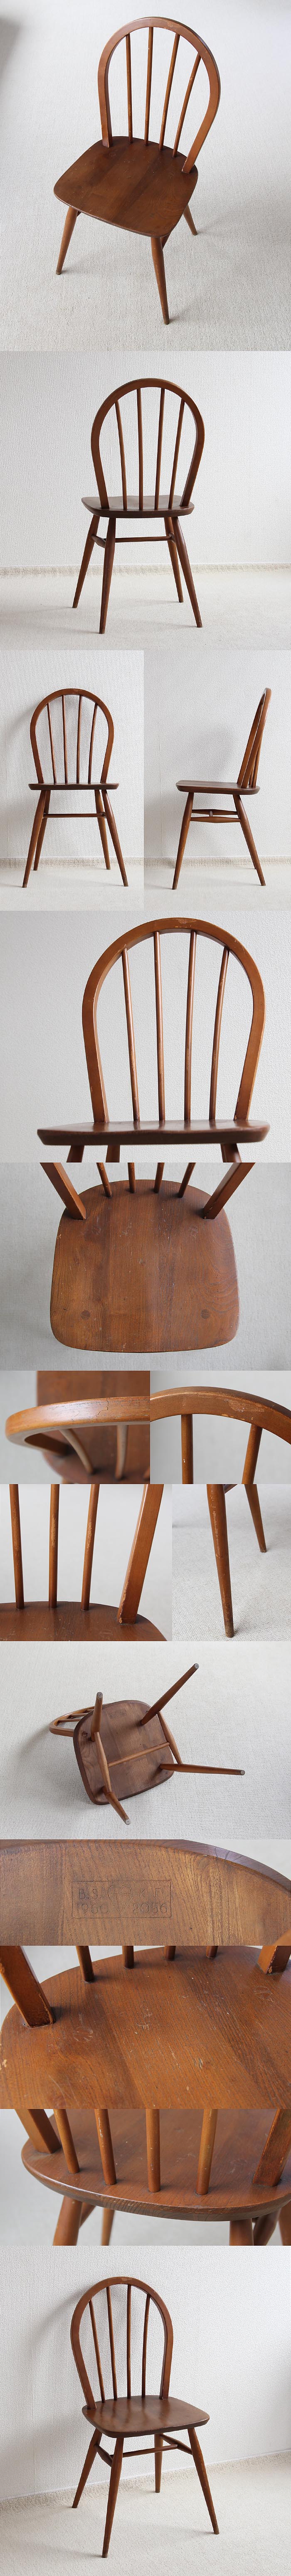 イギリス ヴィンテージ アーコールチェア ERCOL 木製椅子 アンティーク 家具 「フープバックチェア」V-716